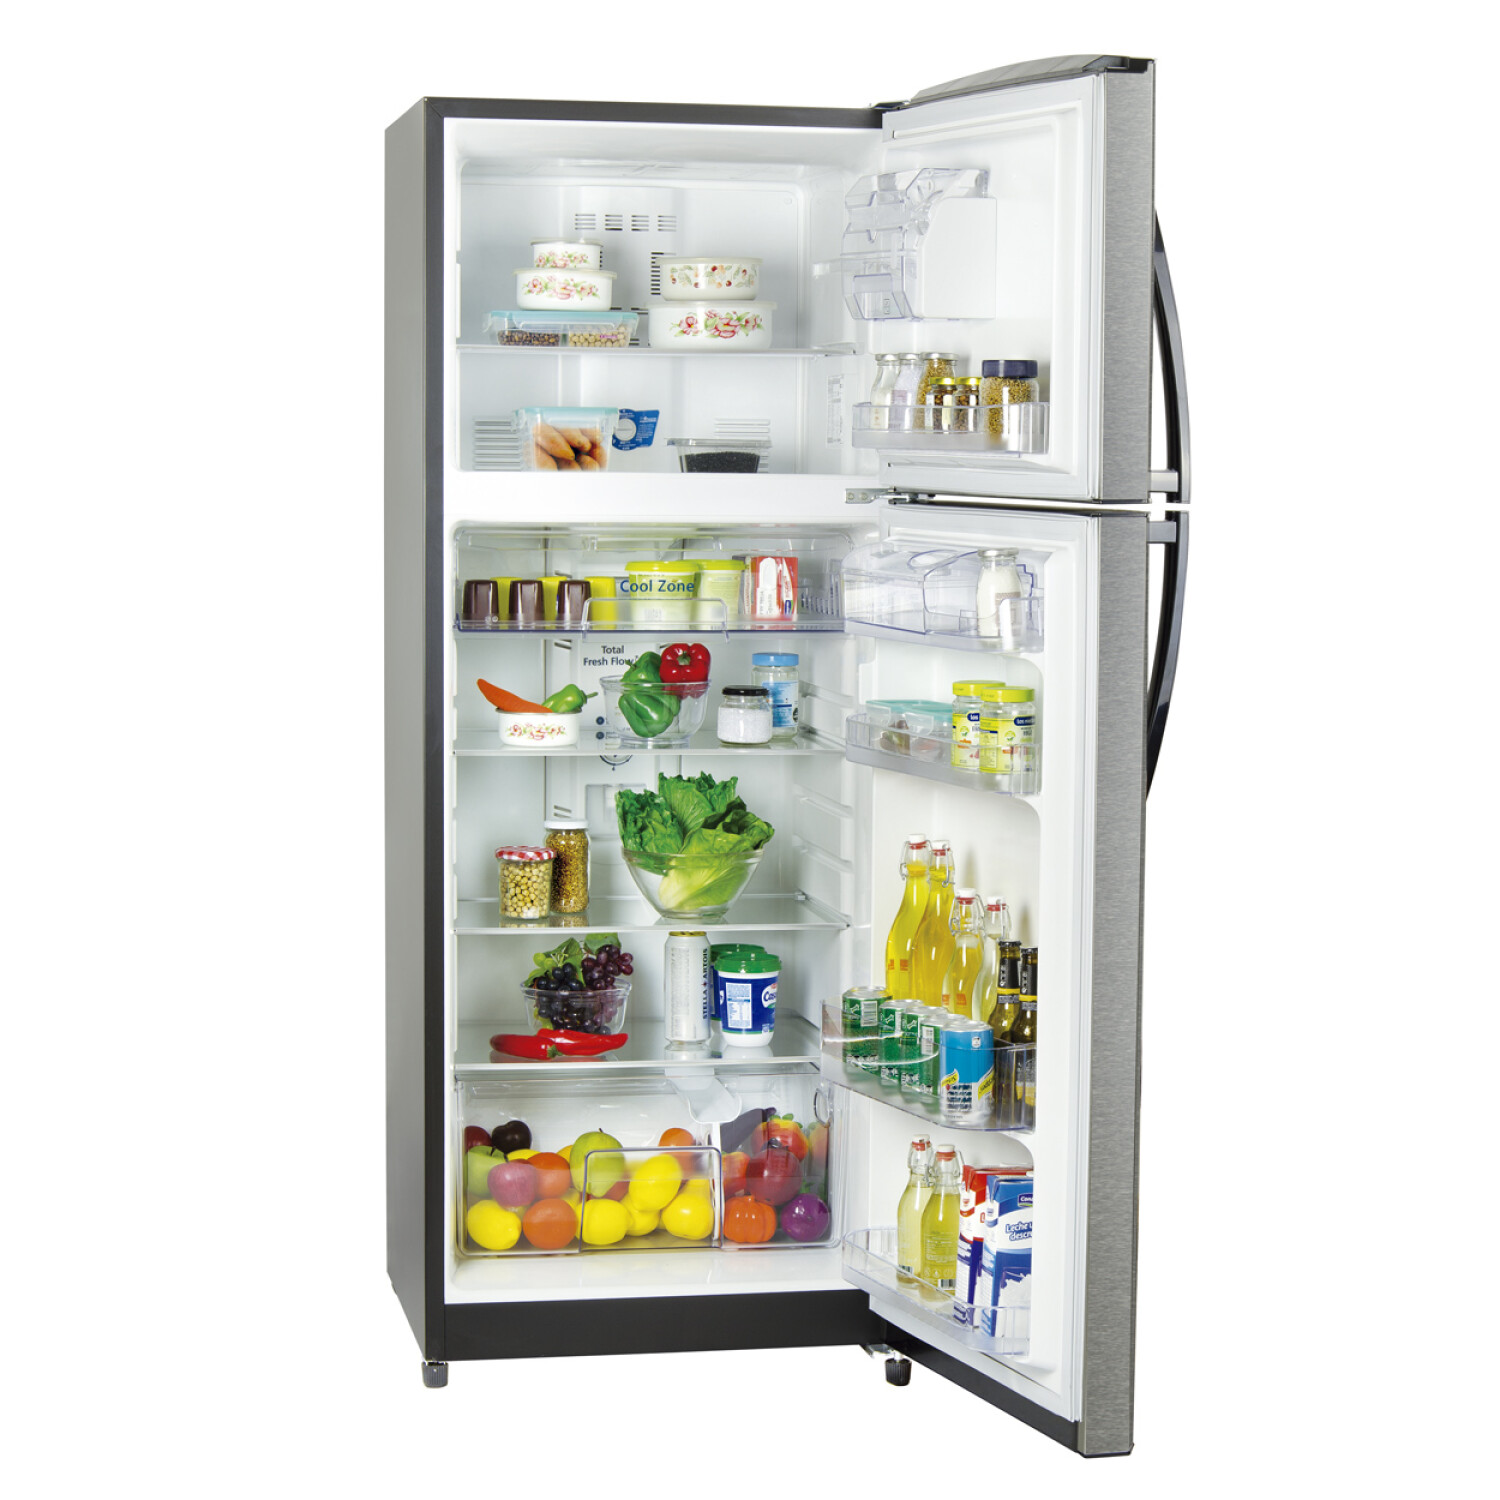 Cuál es la diferencia de un refrigerador industrial a uno doméstico? –  Inventto Group